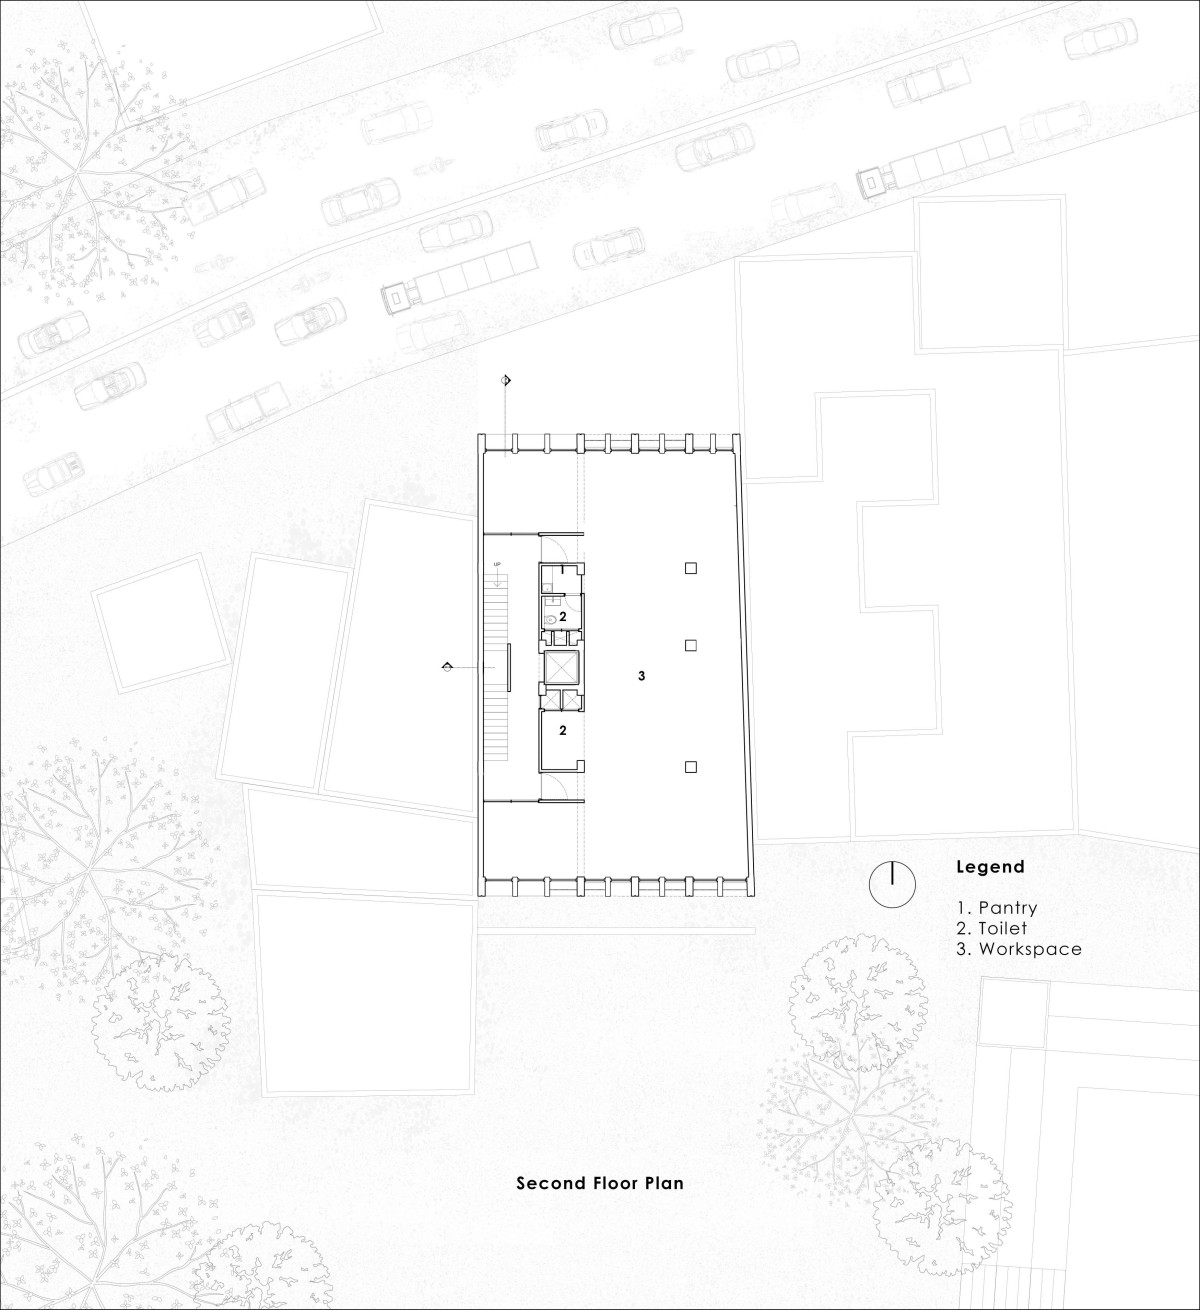 Second floor plan of Veiled Building by KUN Studio